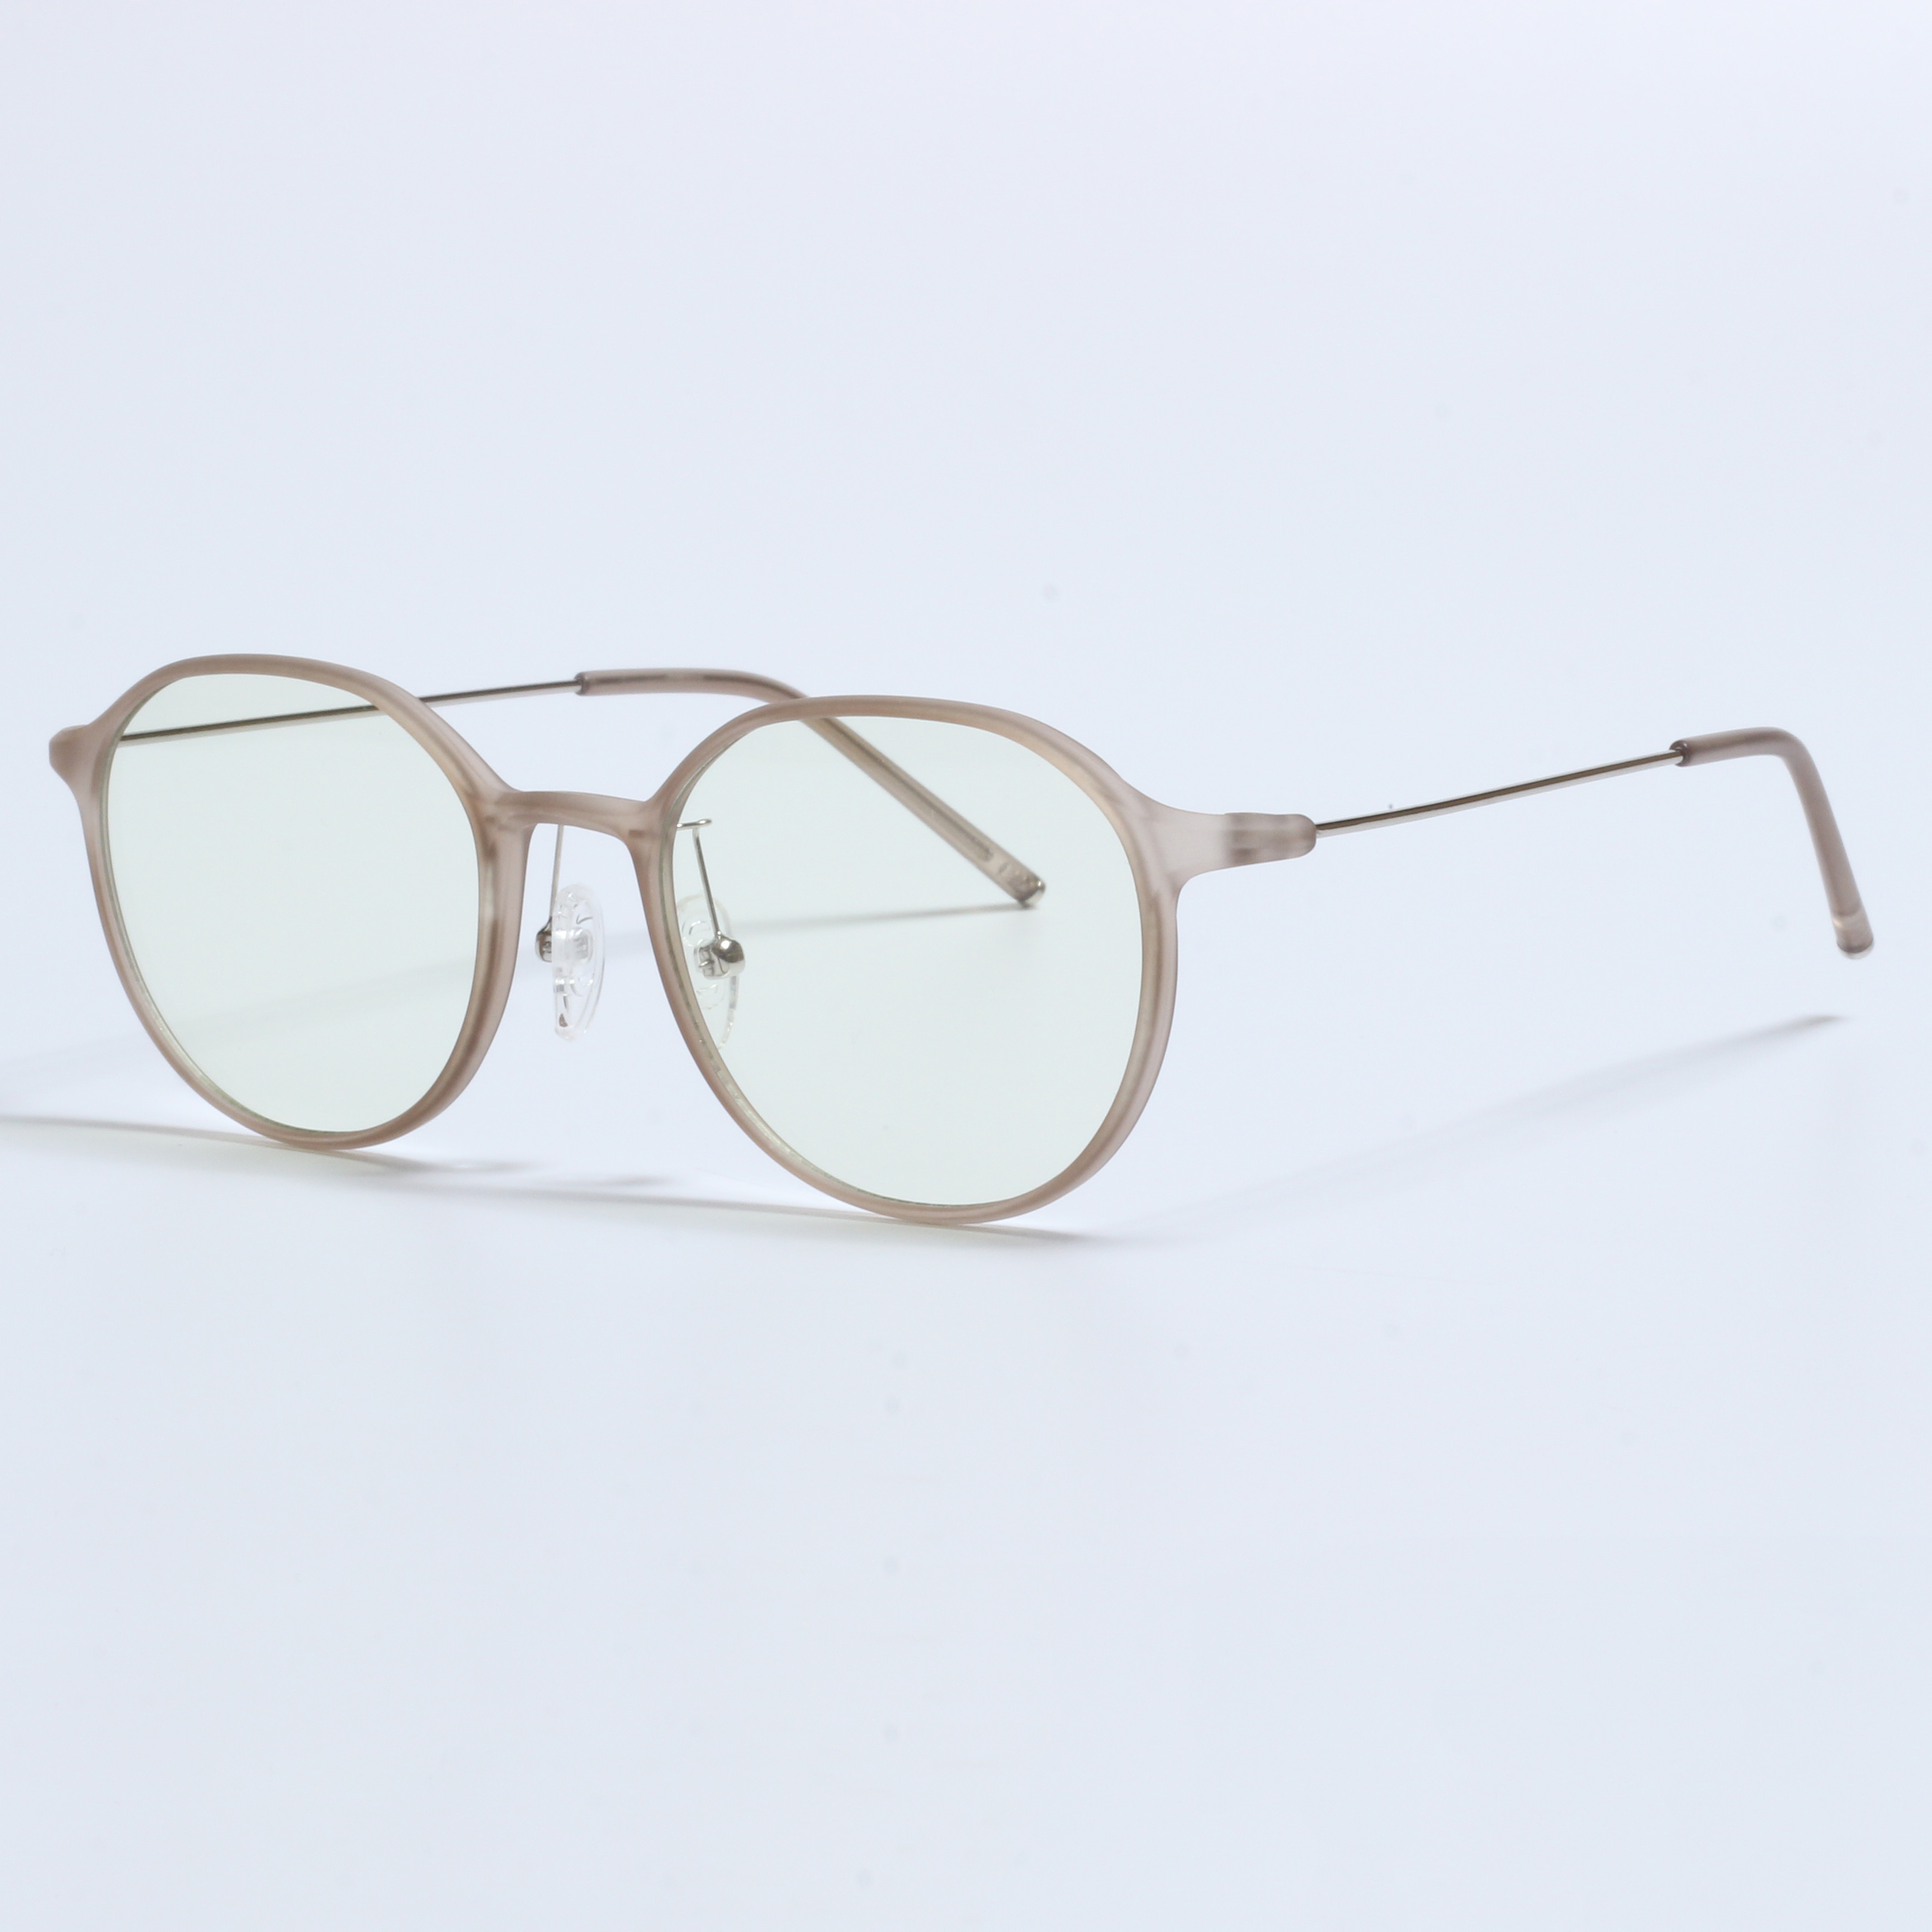 Vintage dikke Gafas Opticas De Hombres transparante TR90-frames (7)